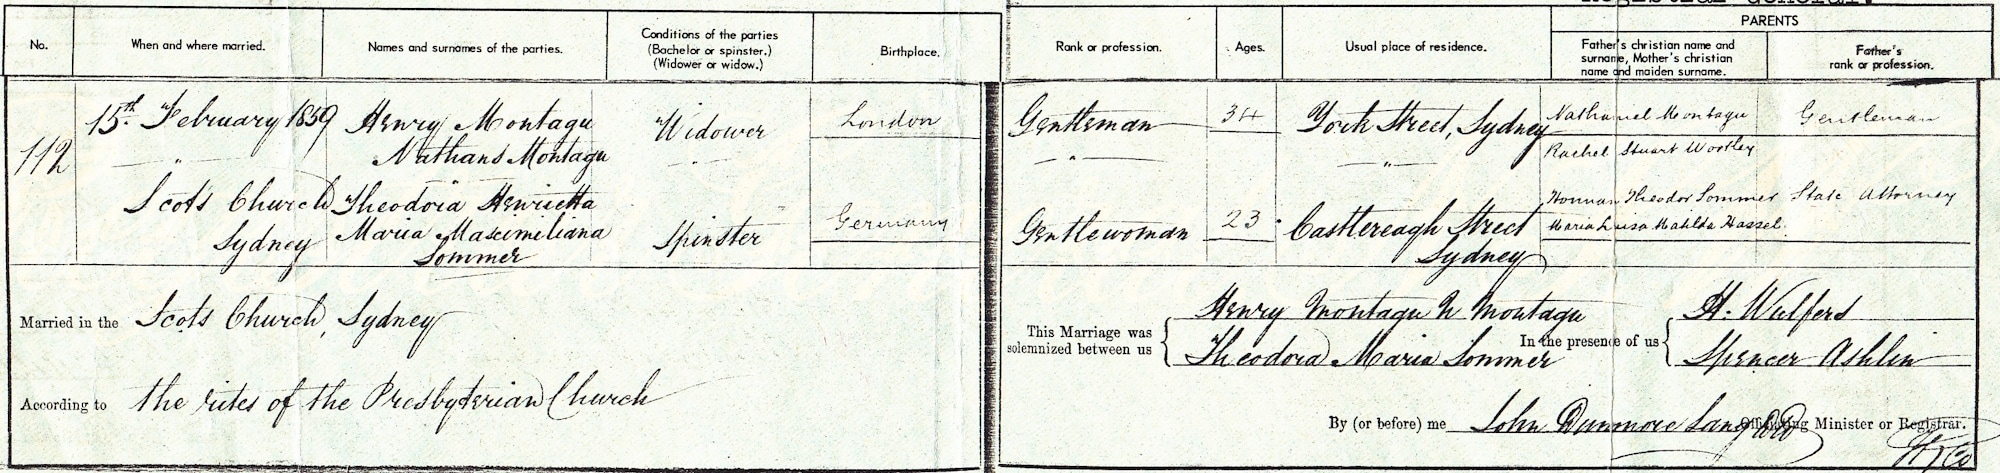 Monatgu marriage, 15 February 1859